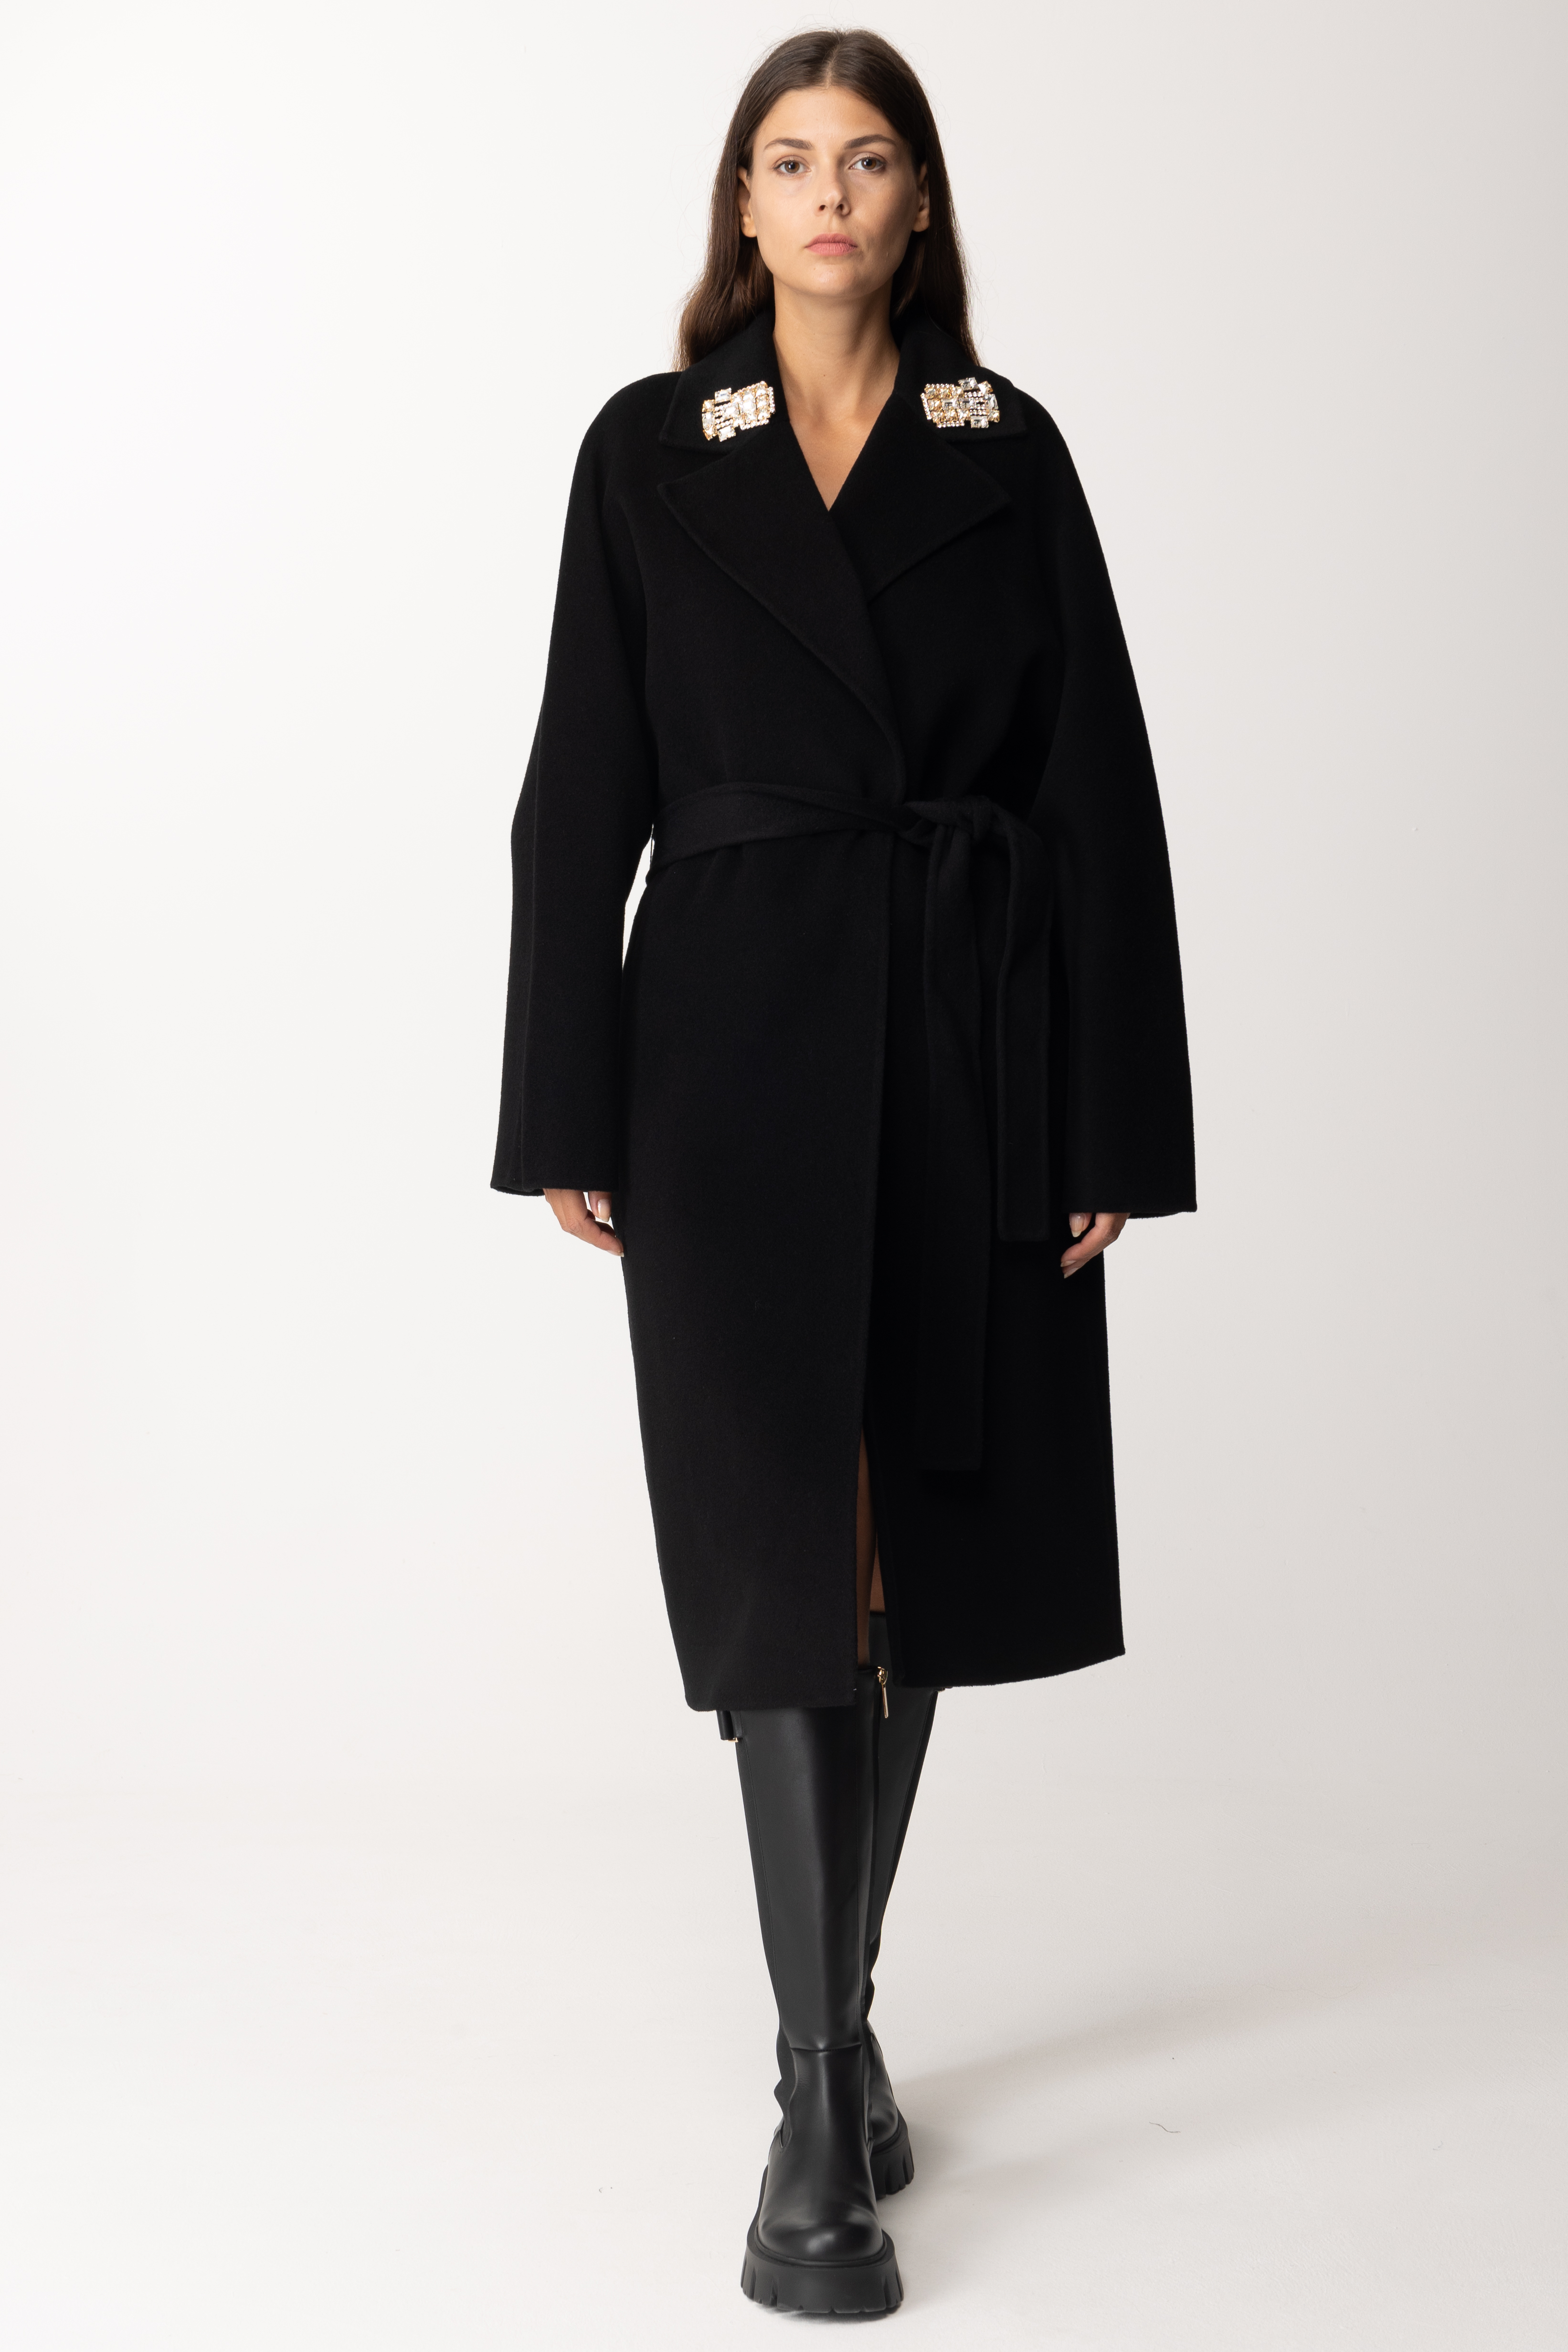 Podgląd: Elisabetta Franchi Wełniany płaszcz ze szpilkami w klapach Nero